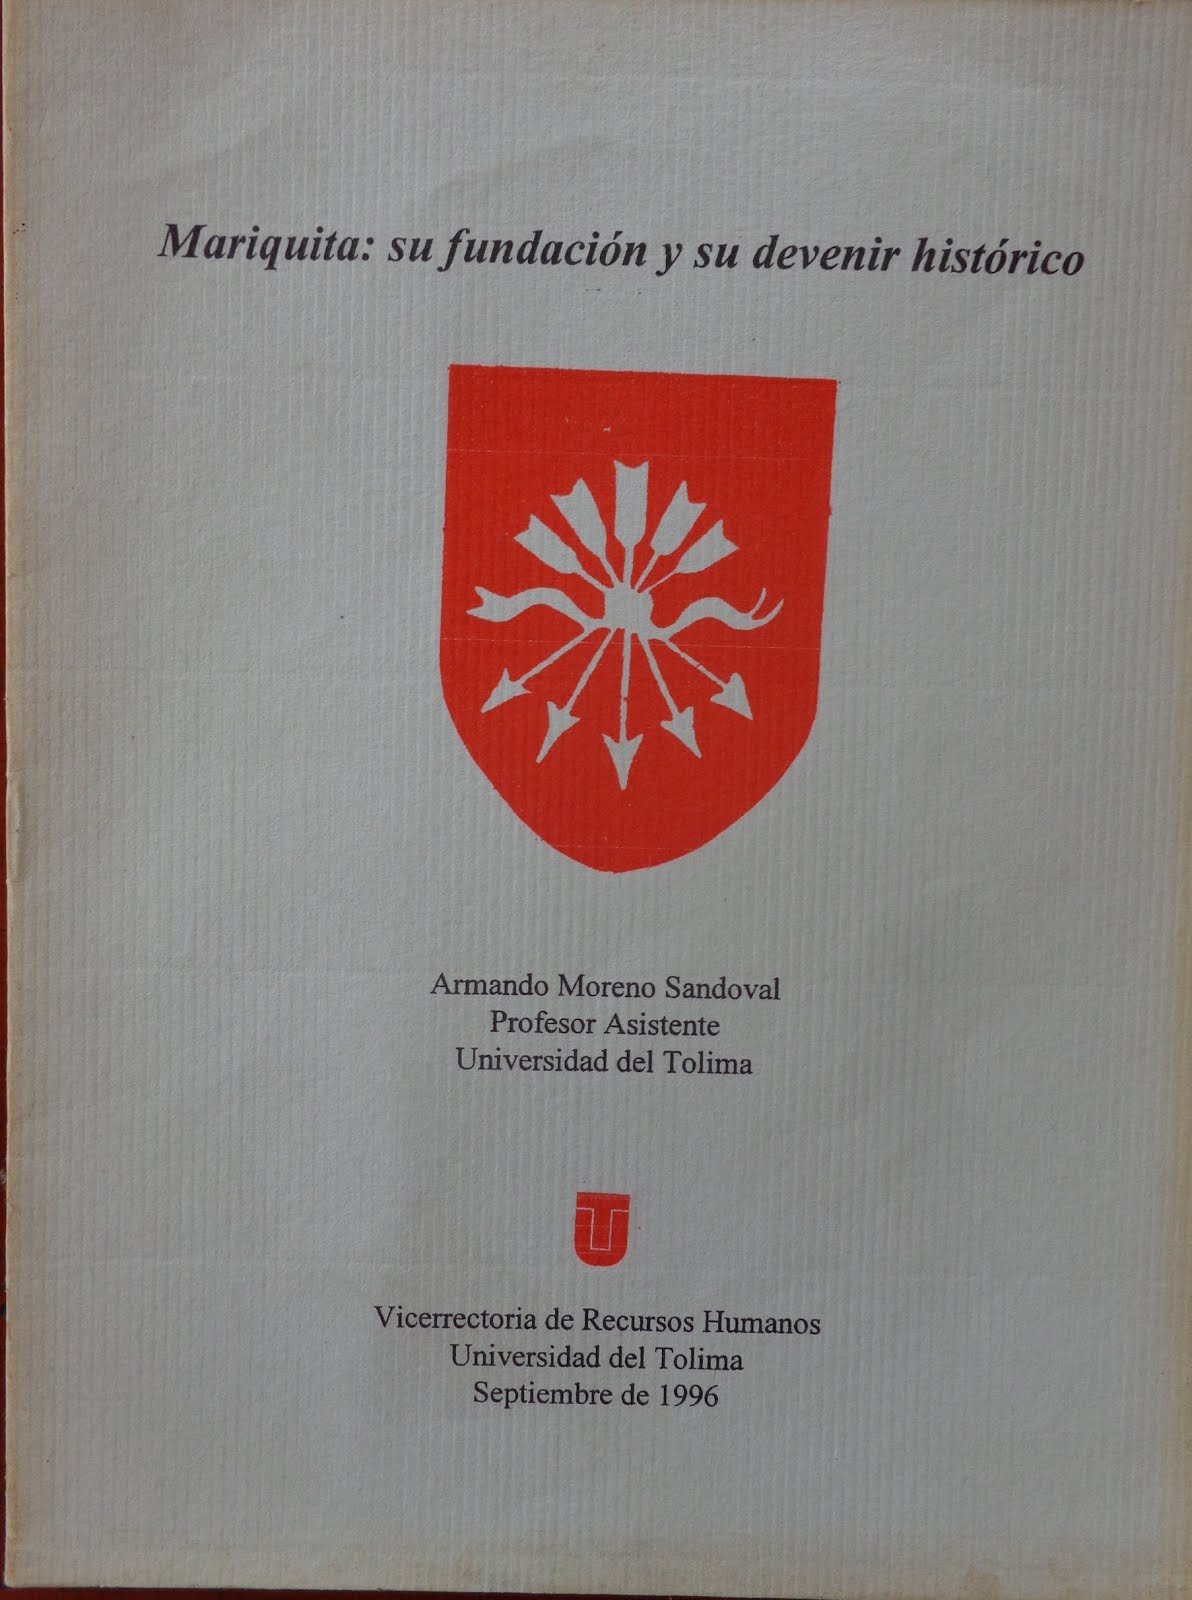 Mariquita: su fundación y devenir histórico